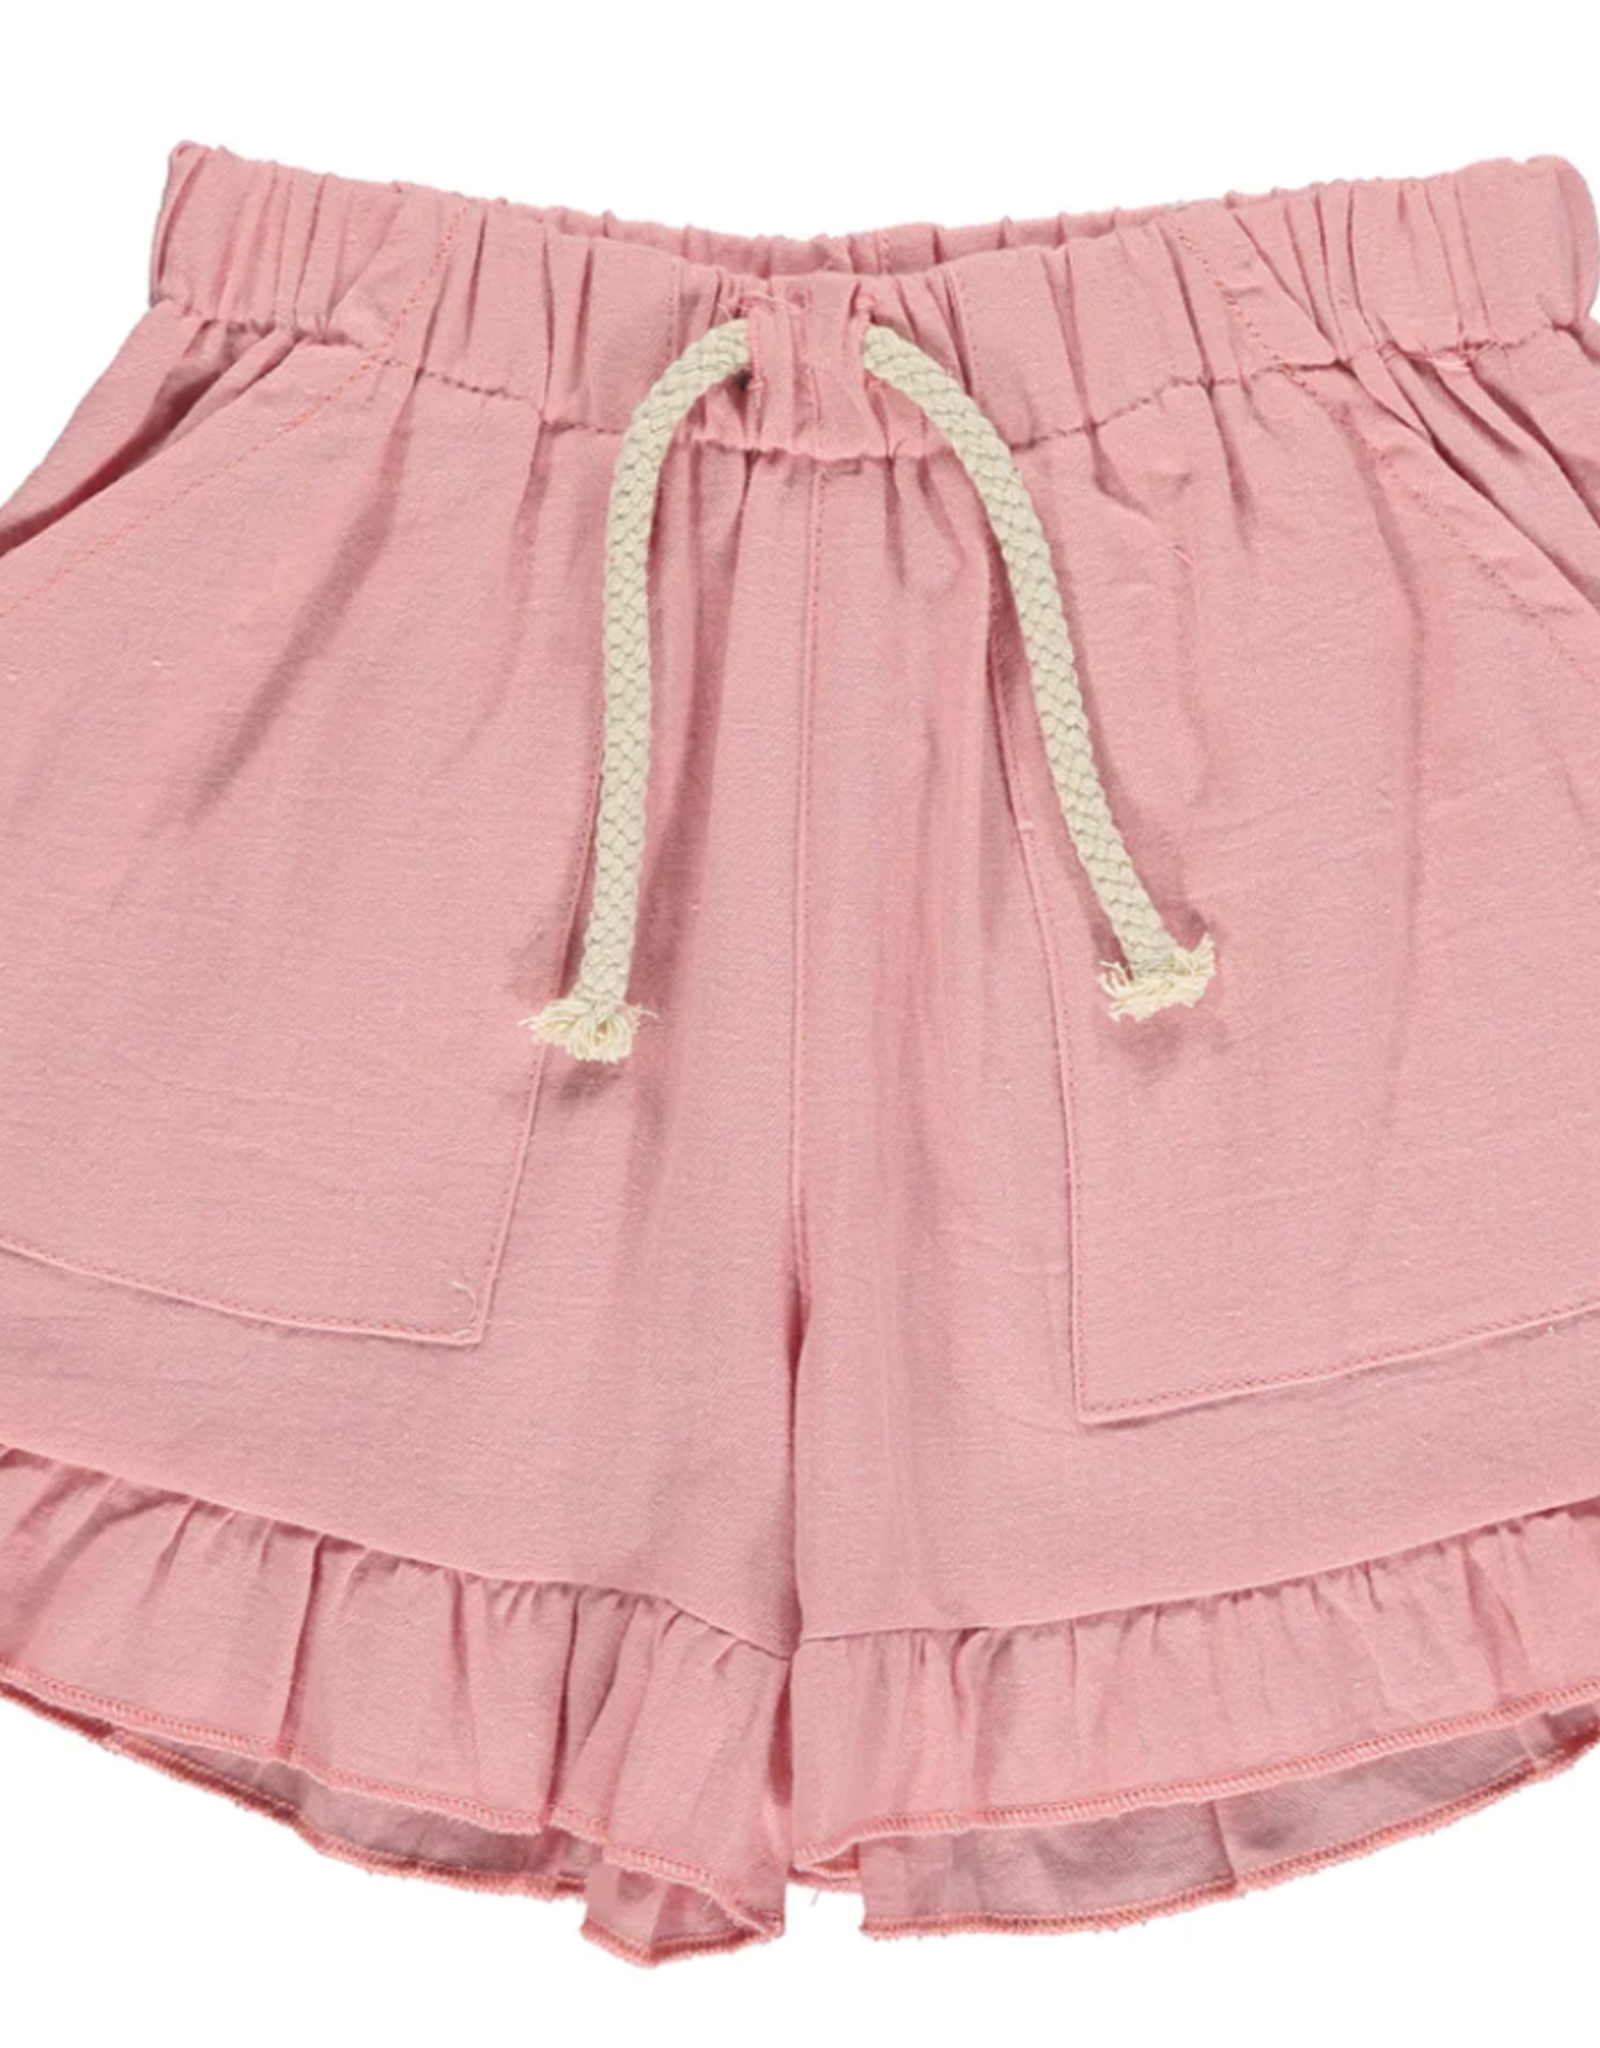 Vignette Brynlee Shorts, Pink